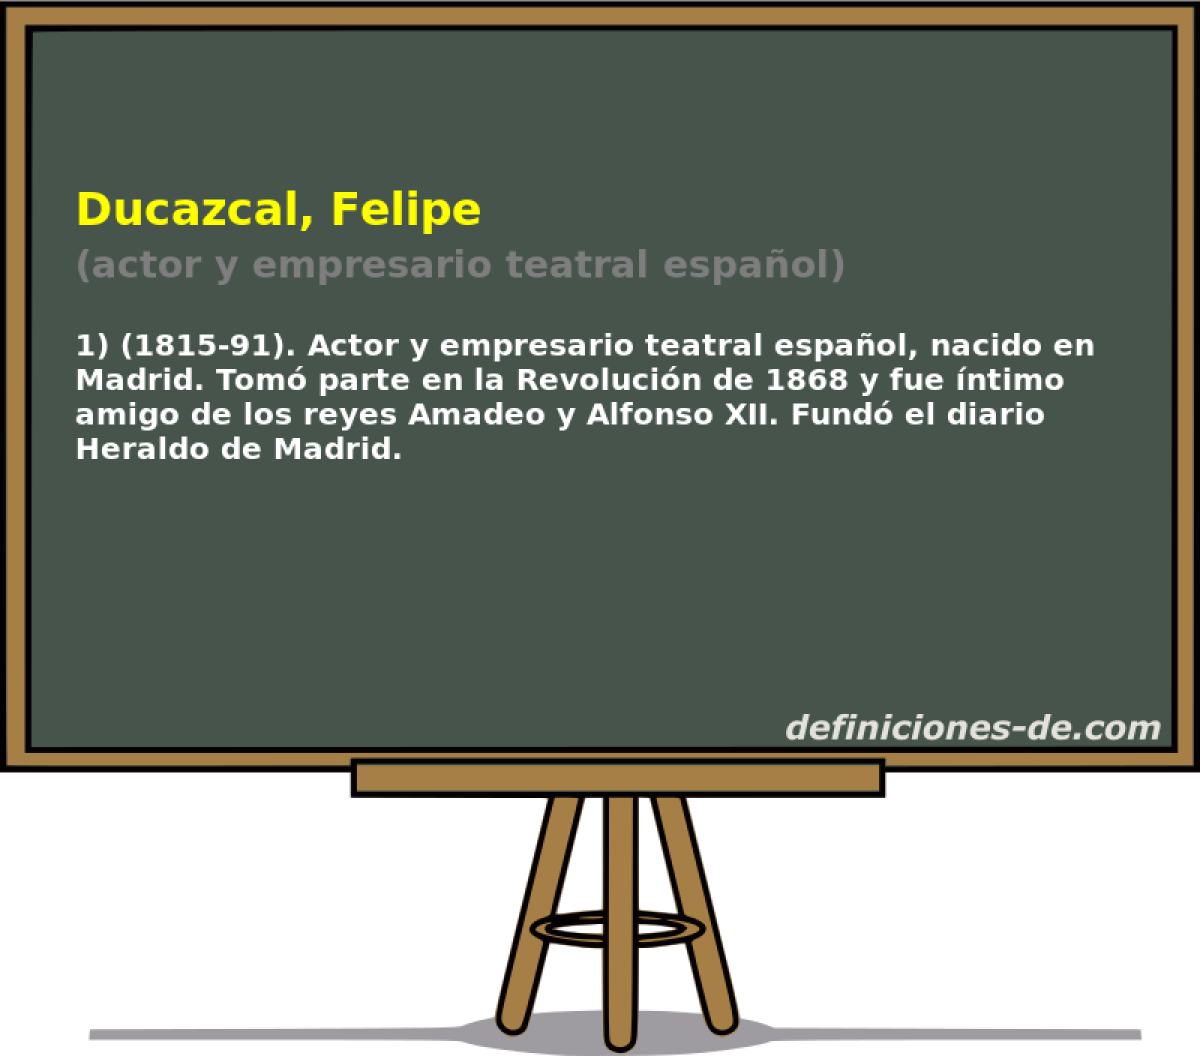 Ducazcal, Felipe (actor y empresario teatral espaol)